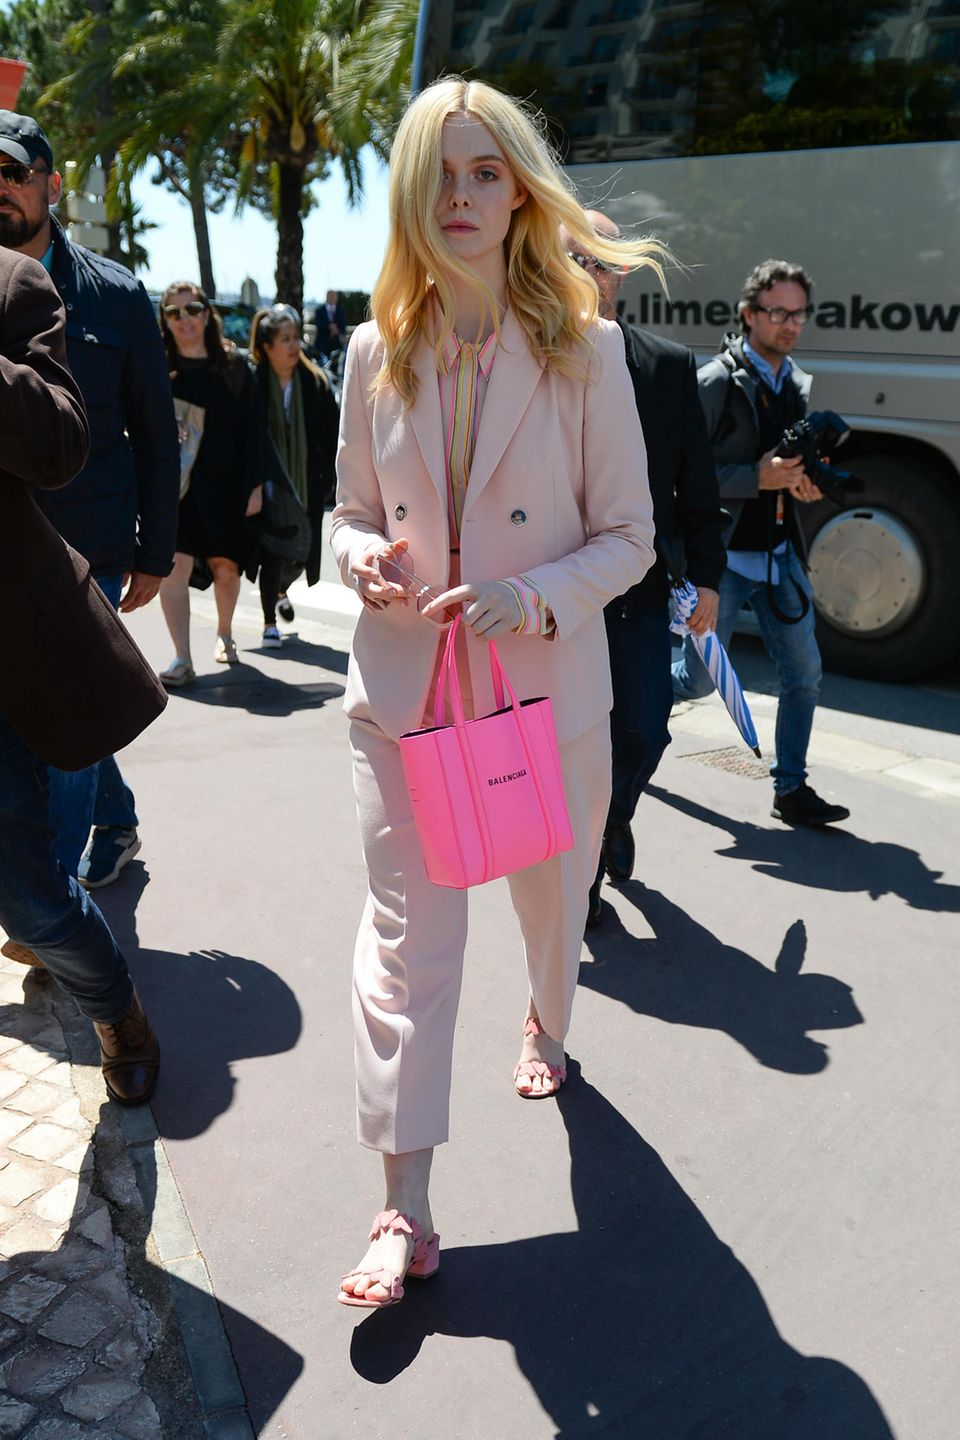 Bevor es zum Fotoshooting mit L’Oréal geht, spaziert Elle Fanning, diesjähriges Jurymitglied der Filmfestspiele, in einem rosafarbenen Hosenanzug und pinkfarbener Handtasche durch Cannes.